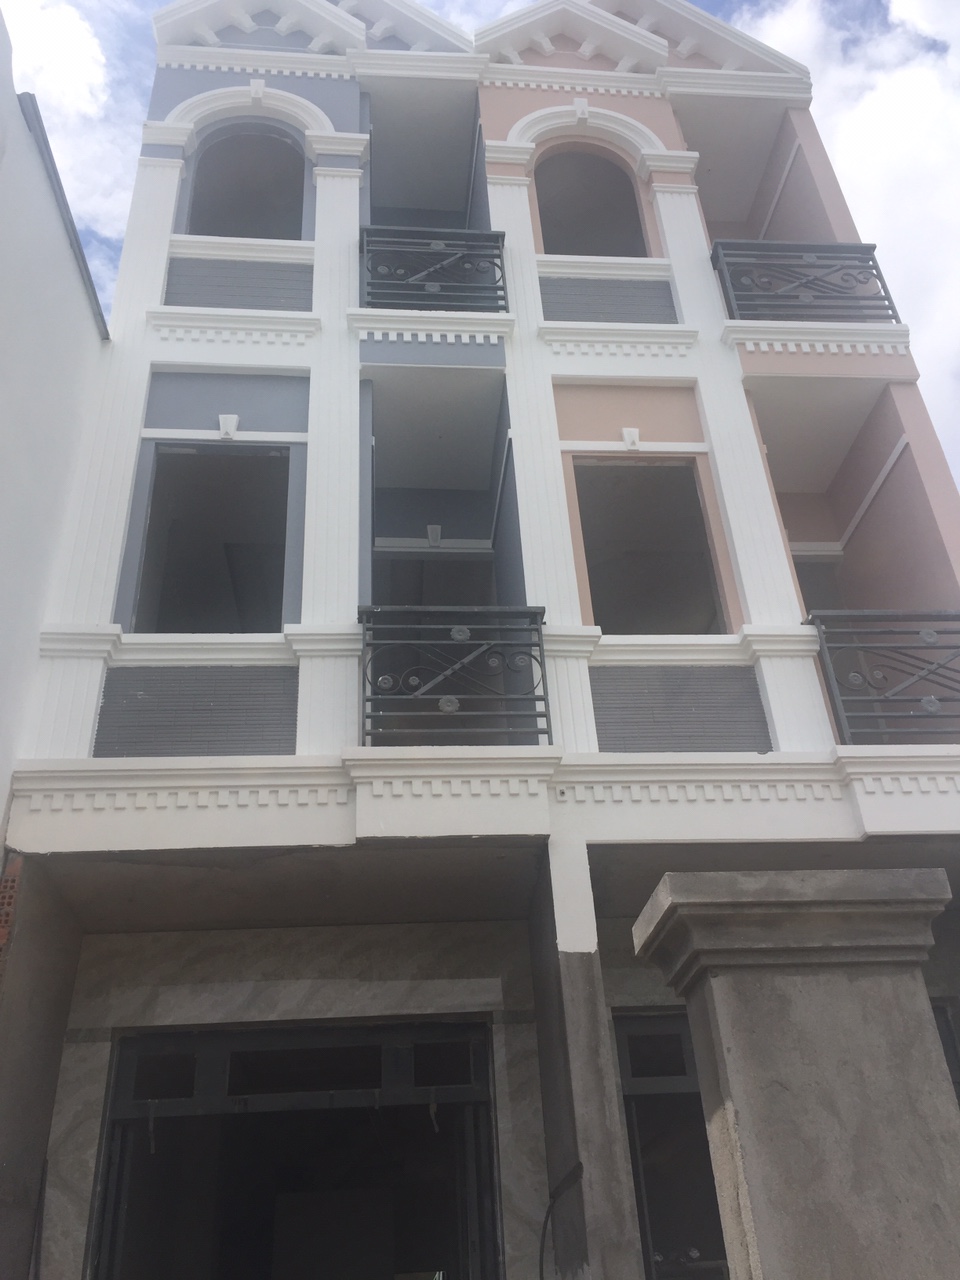 Bán nhà phố mới đẹp, hẻm 8m đường Huỳnh Tấn Phát, Nhà Bè, DT 3x18m, 2 lầu. Giá 1,75 tỷ